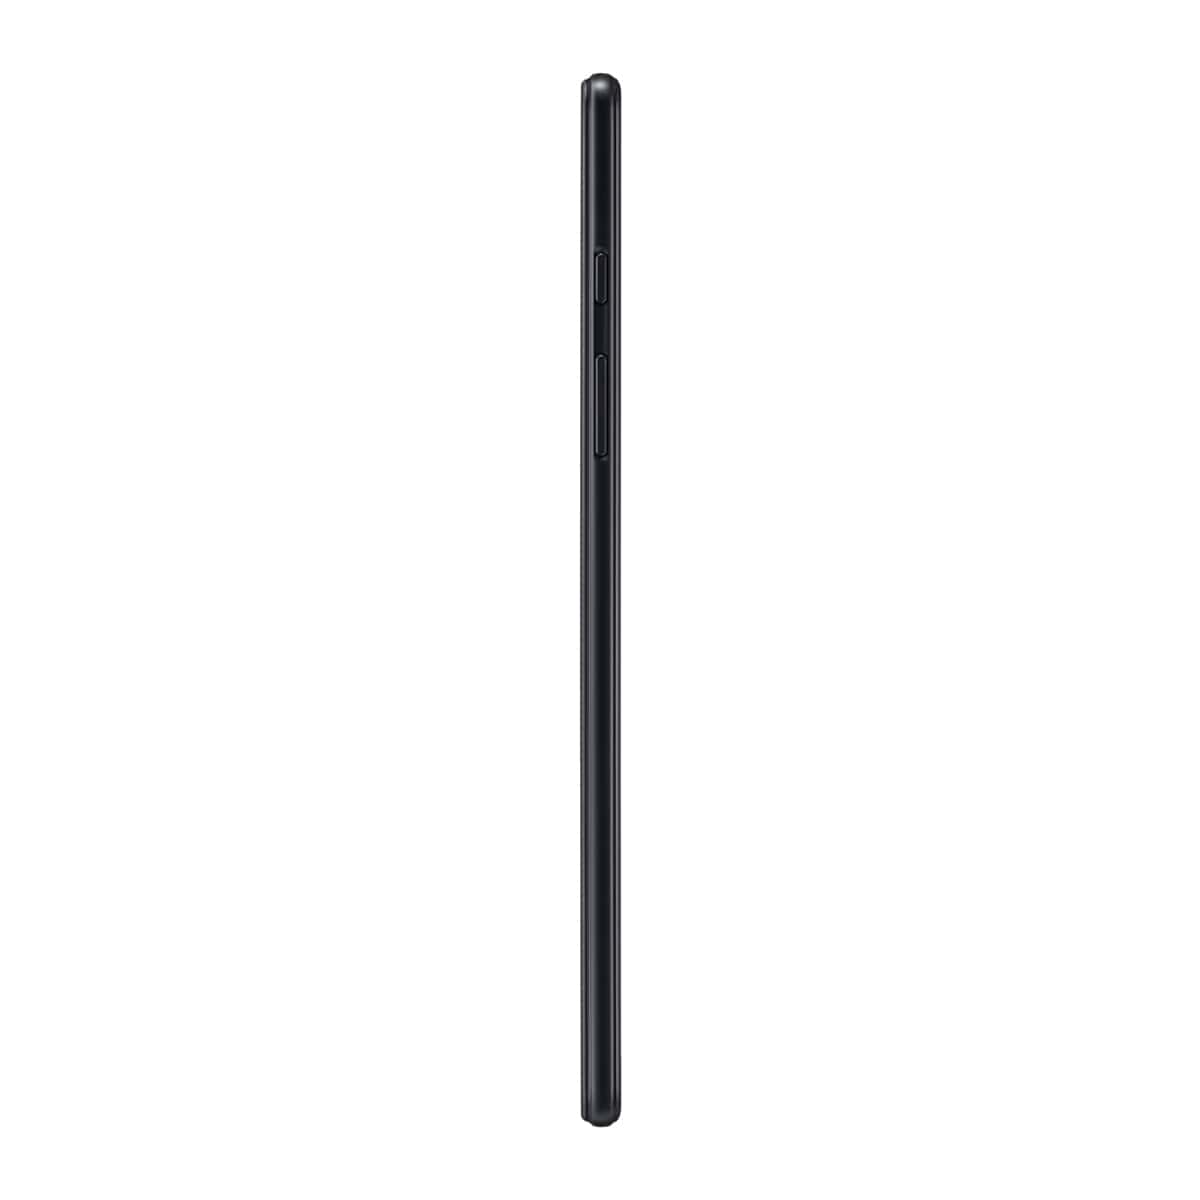 تبلت سامسونگ مدل Galaxy Tab A 8.0 2019 LTE T295 ظرفیت 32 گیگابایت